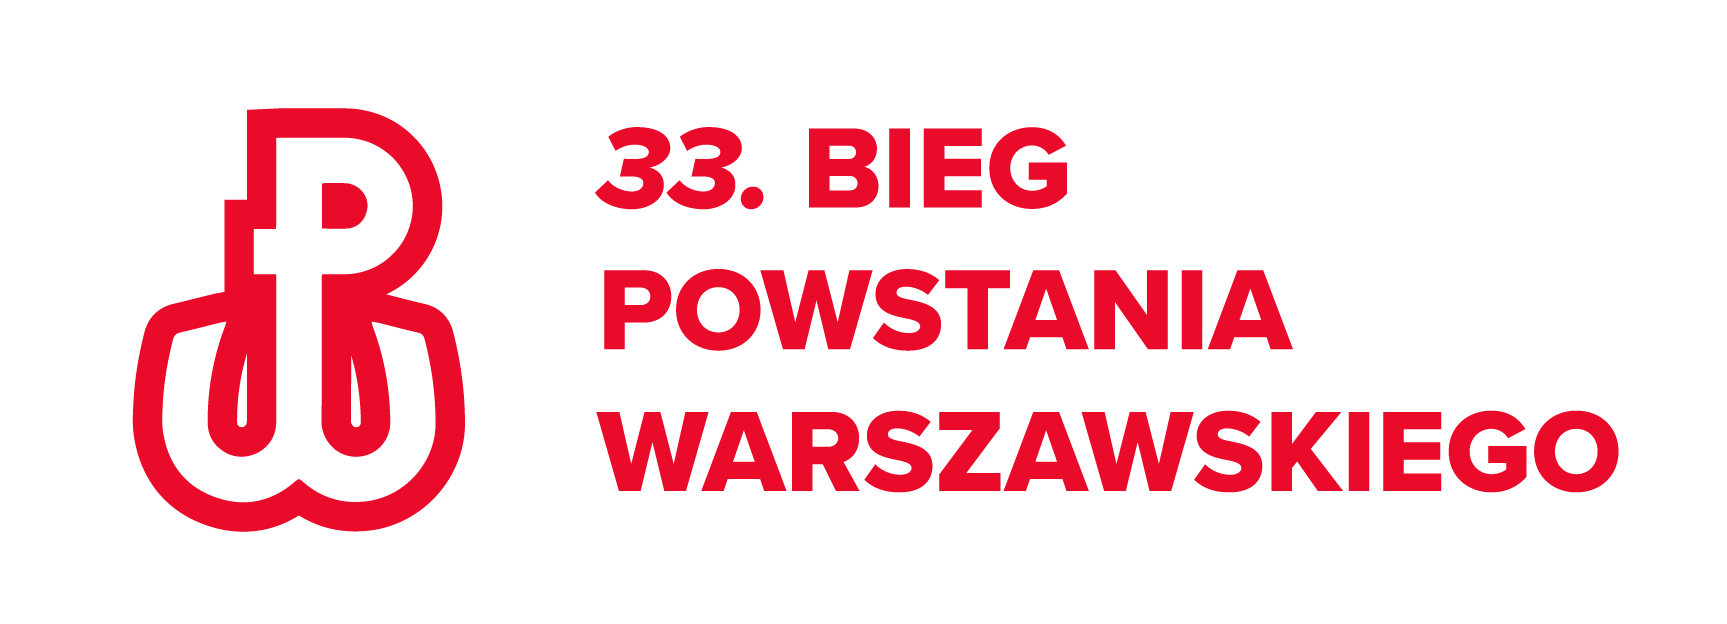 33. Bieg Powstania Warszawskiego